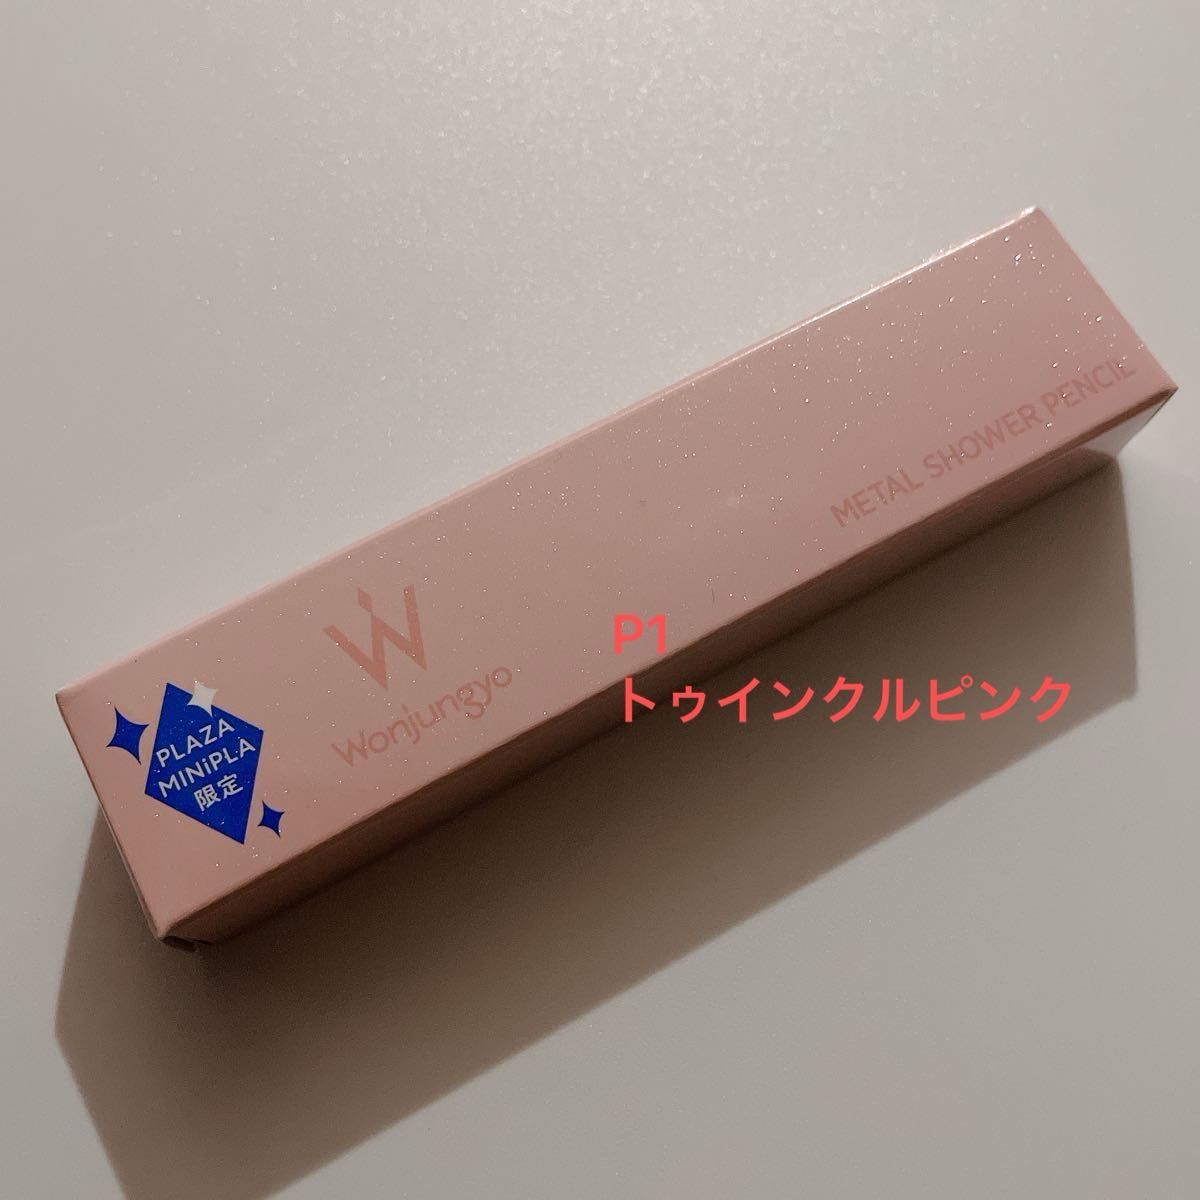 Wonjungyo ウォンジョンヨ メタルシャワーペンシル  P1トゥインクルピンク PLAZA限定カラー